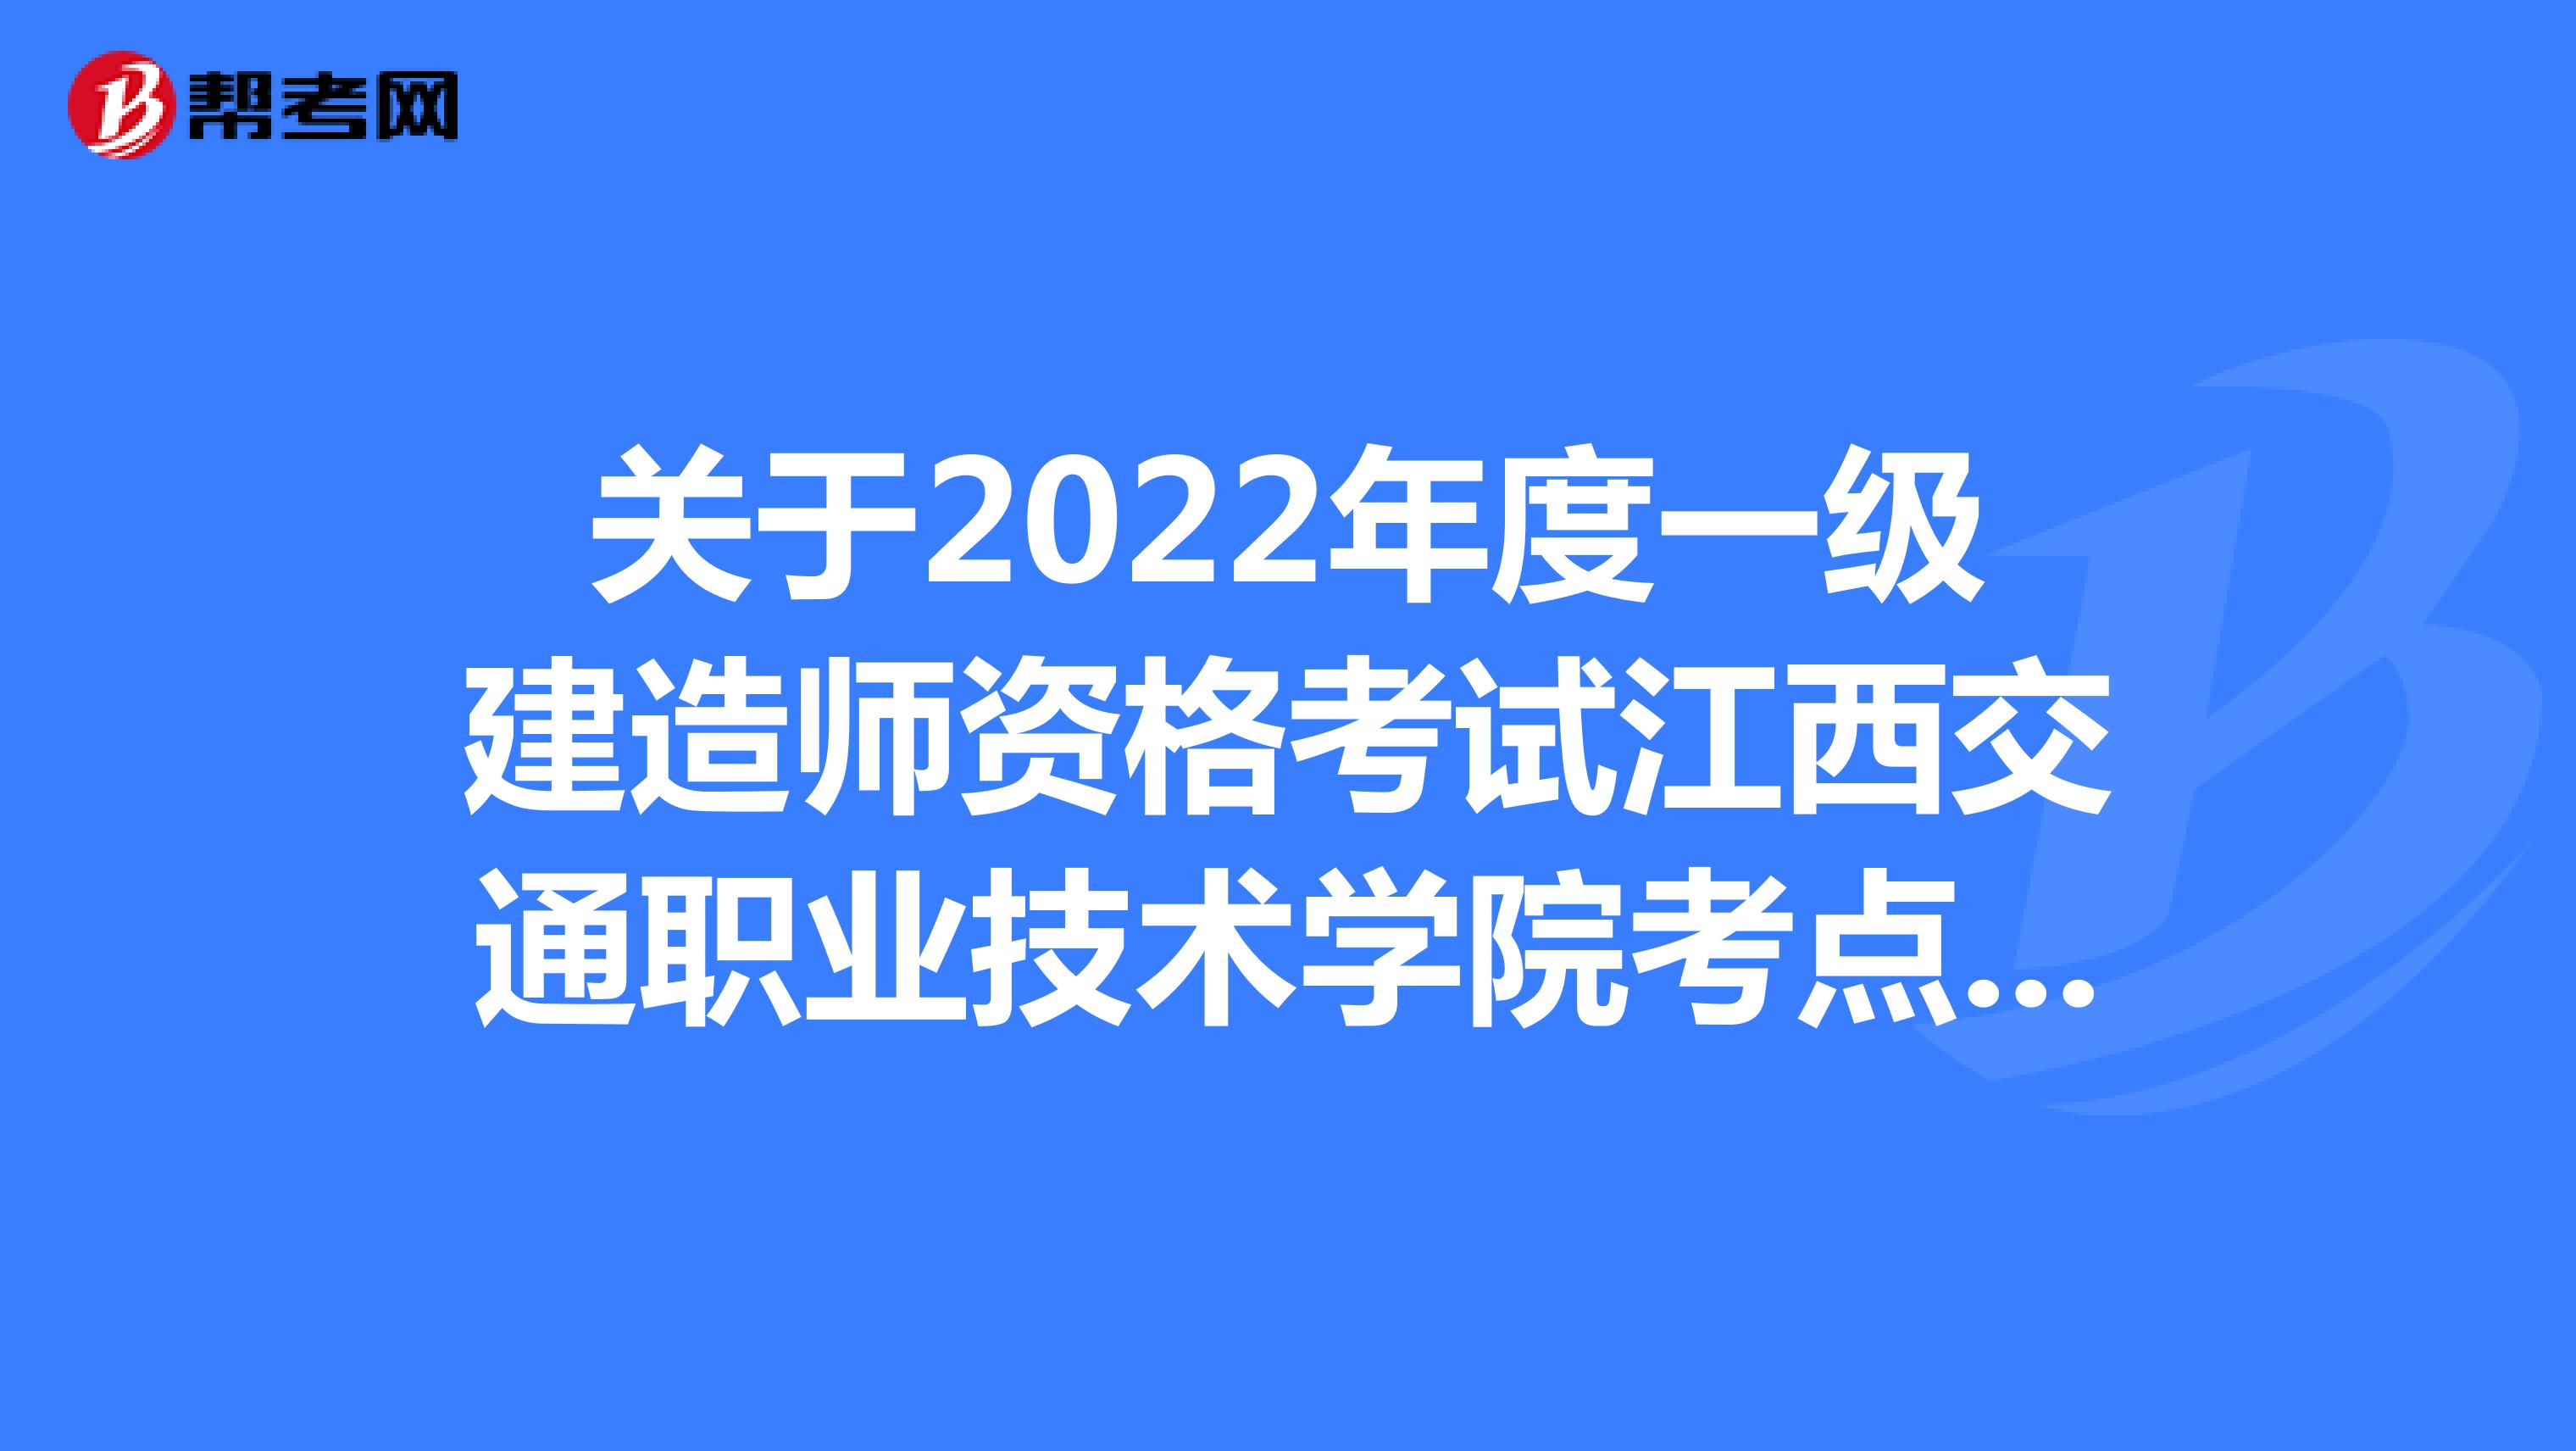 关于2022年度一级建造师资格考试江西交通职业技术学院考点更换的公告